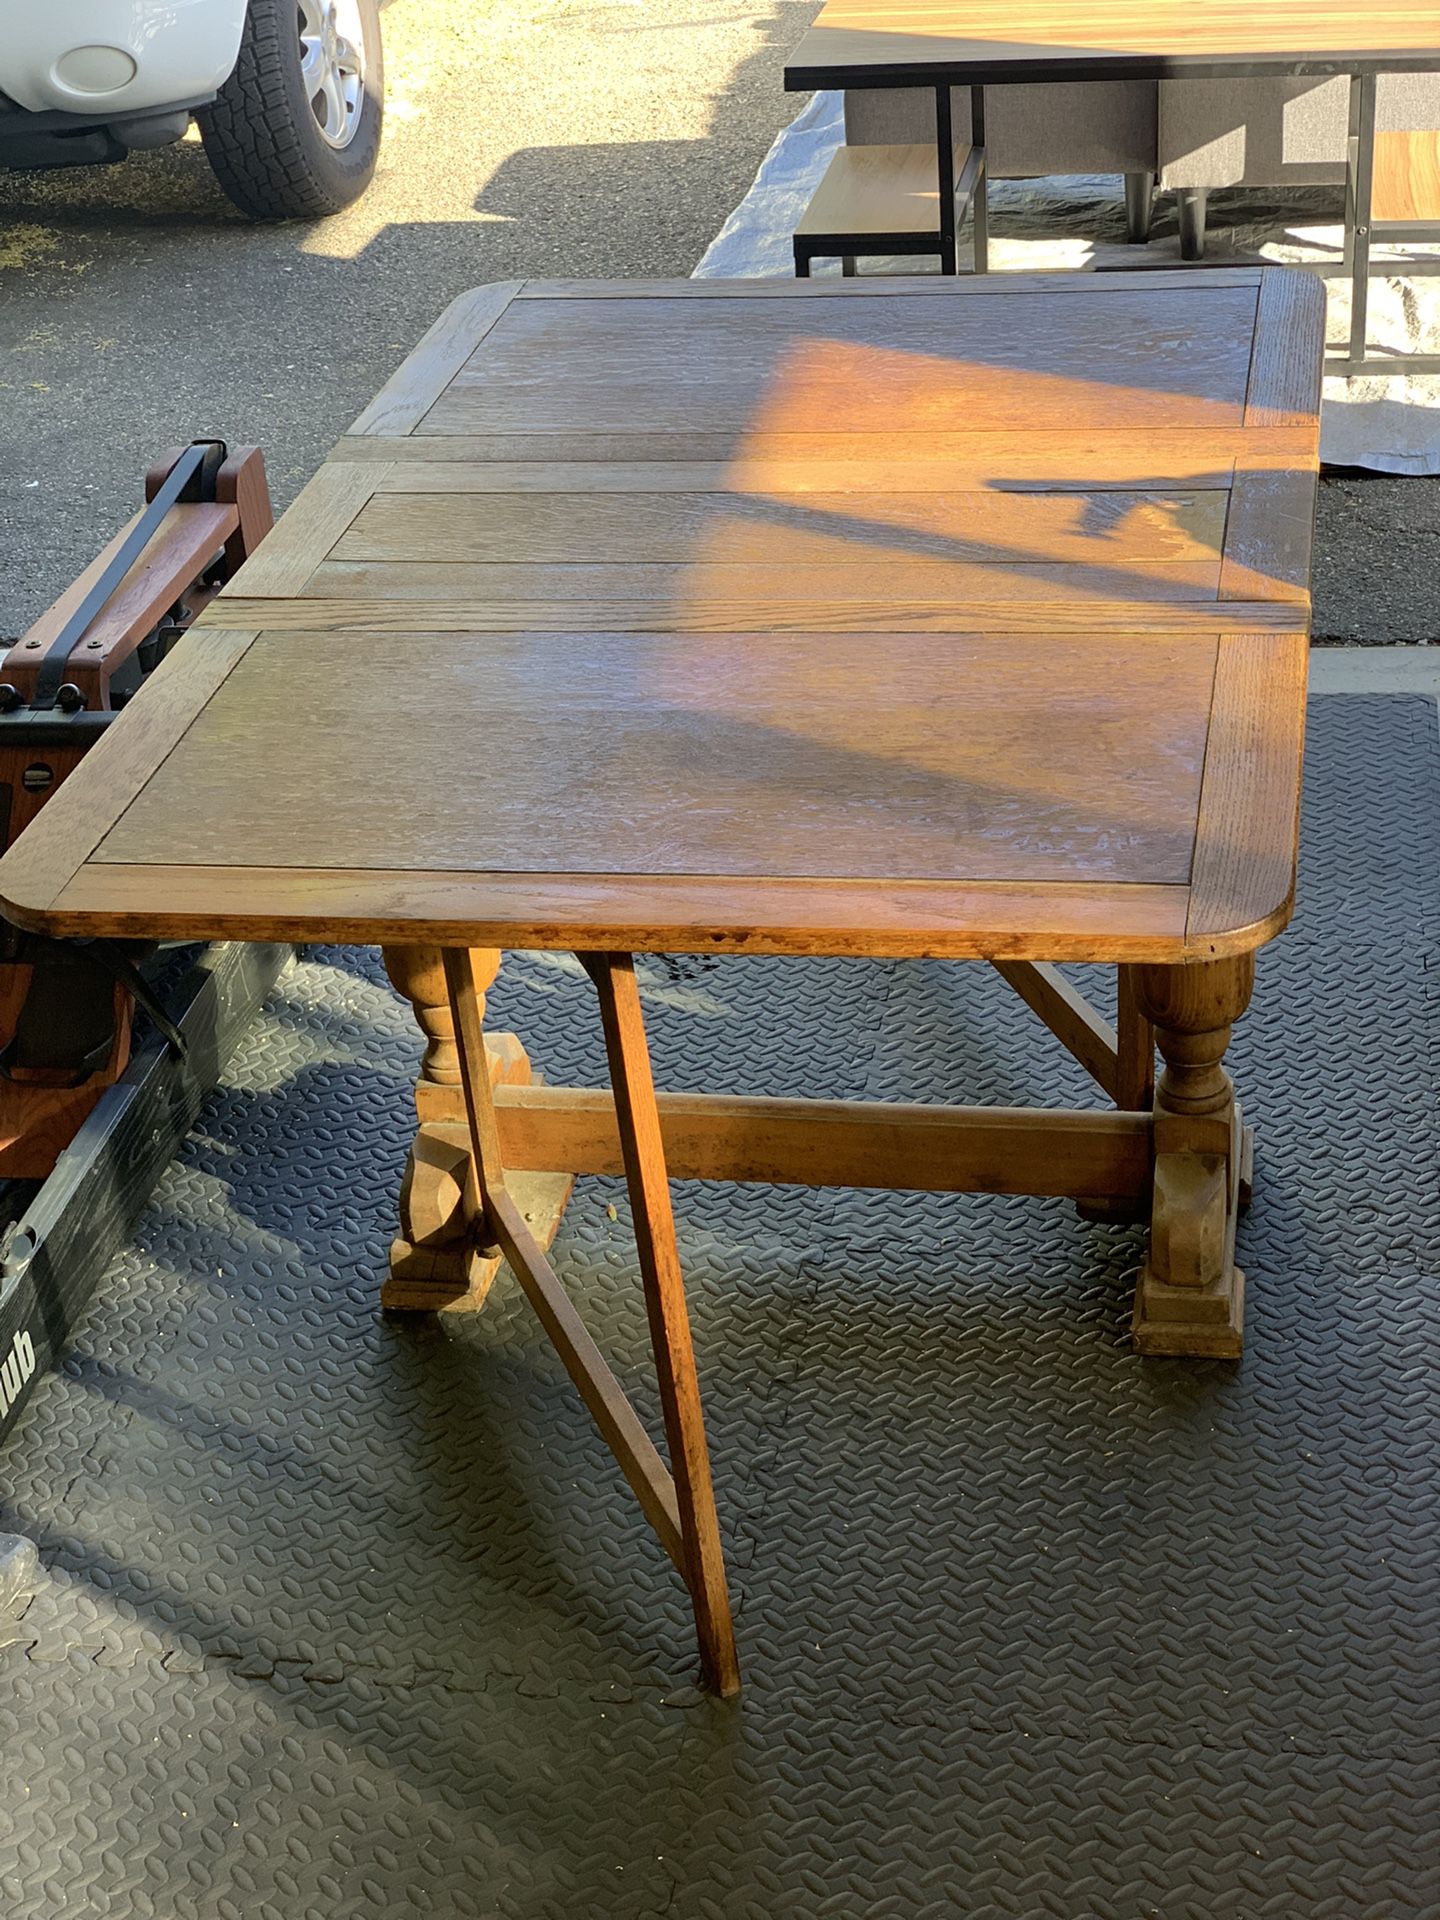 Antique solid oak dual drop leaf farmhouse table - 52.5”l x 35.5”w x 29.5”h